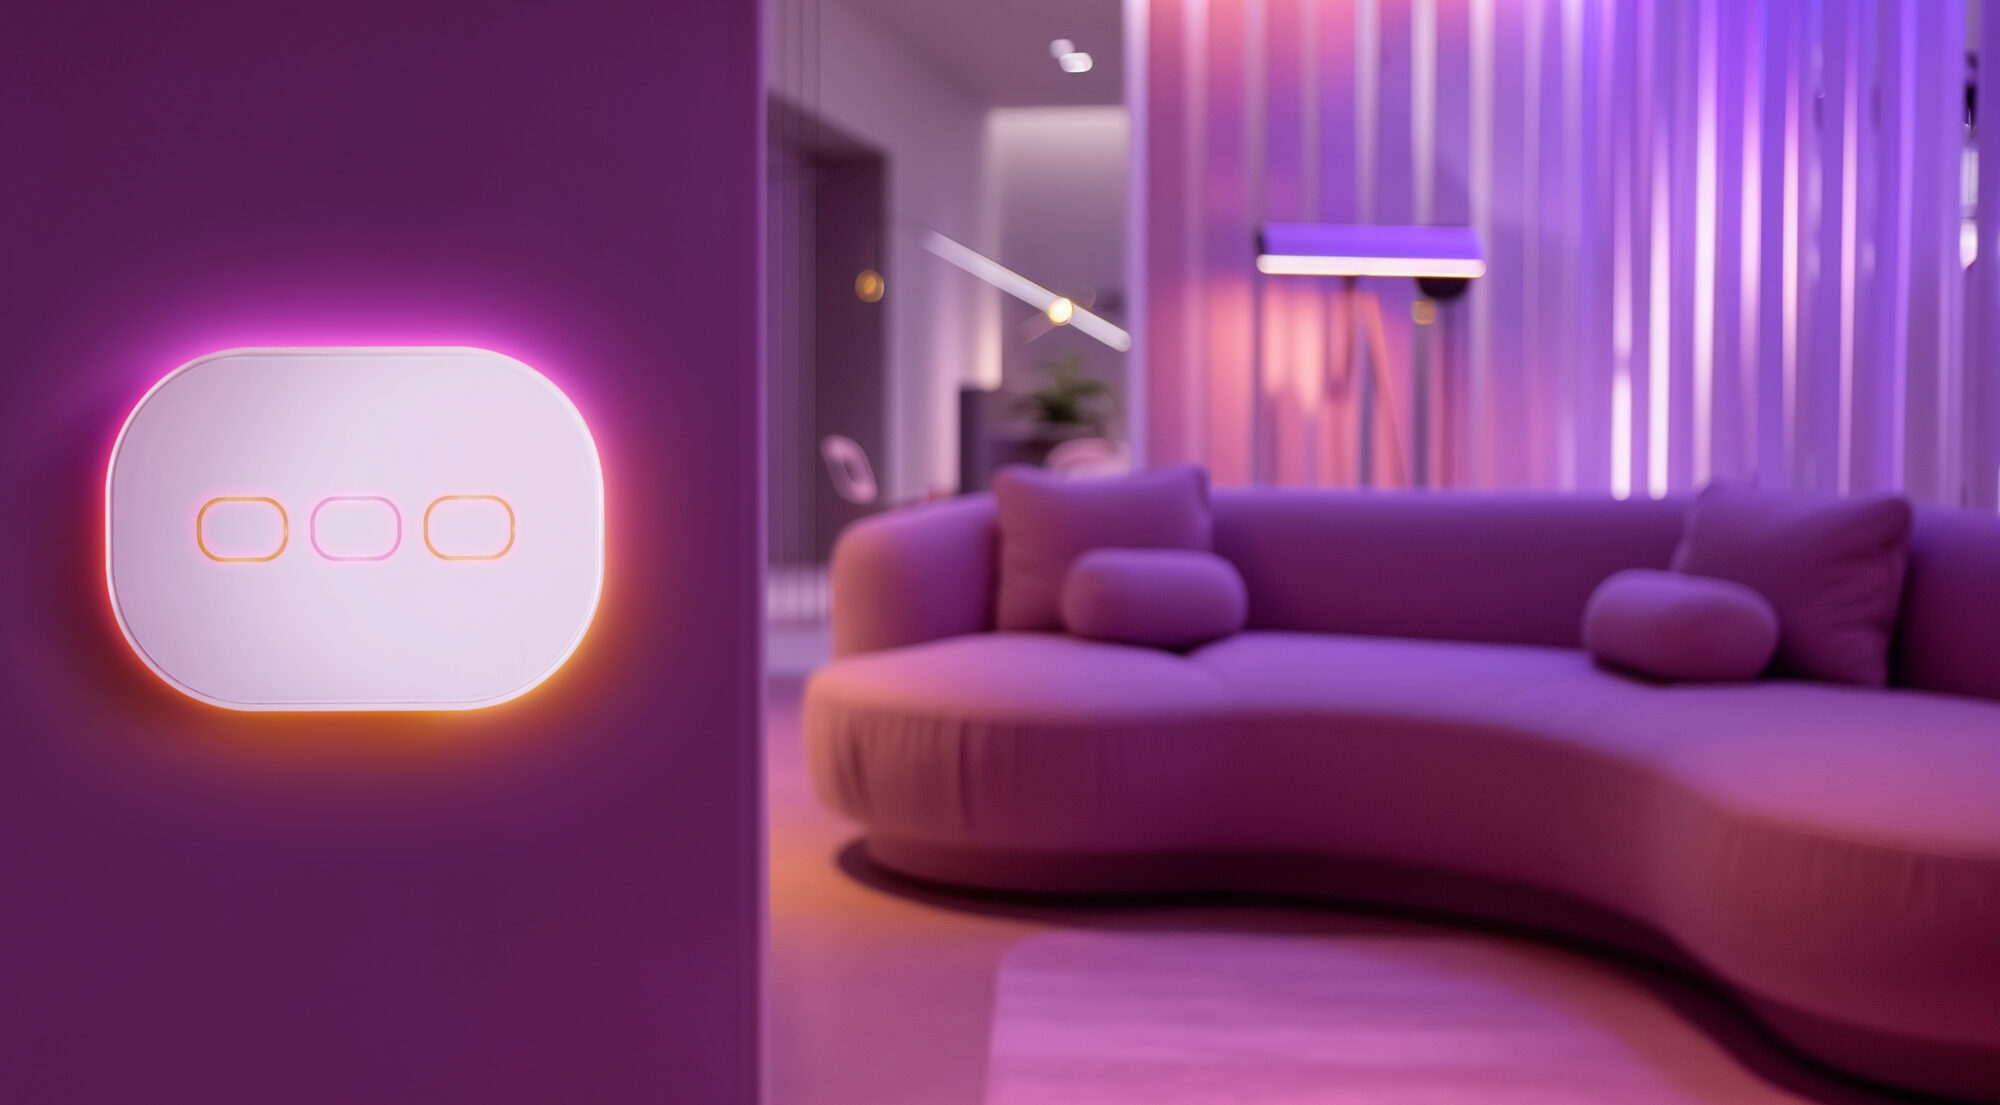 Un ampio divano in un ambiente accogliente dal design moderno e colorato. WiOO è l'interruttore intelligente che controlla le luci e i dispositivi compatibili con Apple HomeKit. Rendi davvero smart la tua casa, il tuo studio o la tua attività.